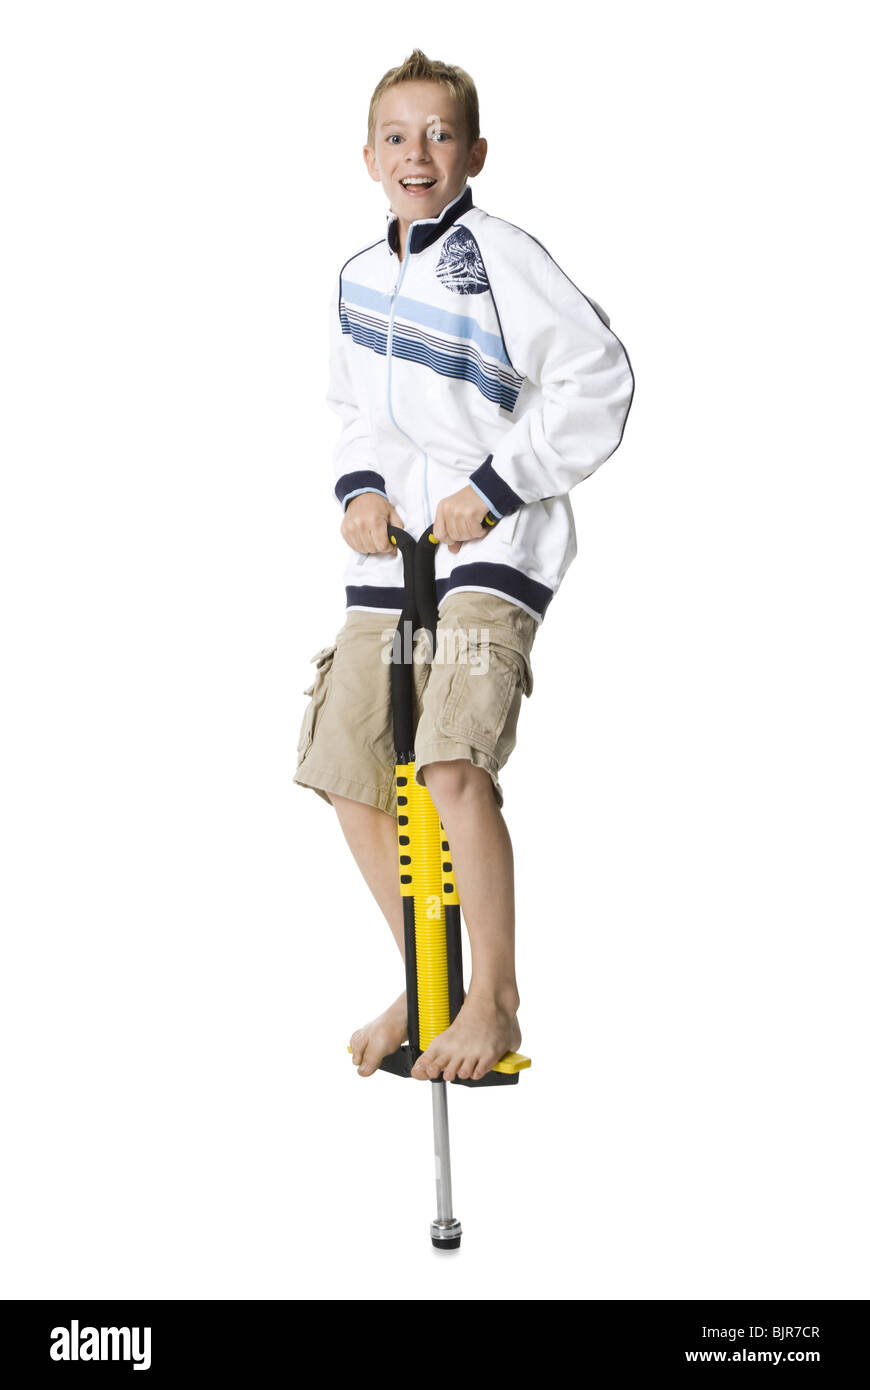 boy on a pogo stick Stock Photo